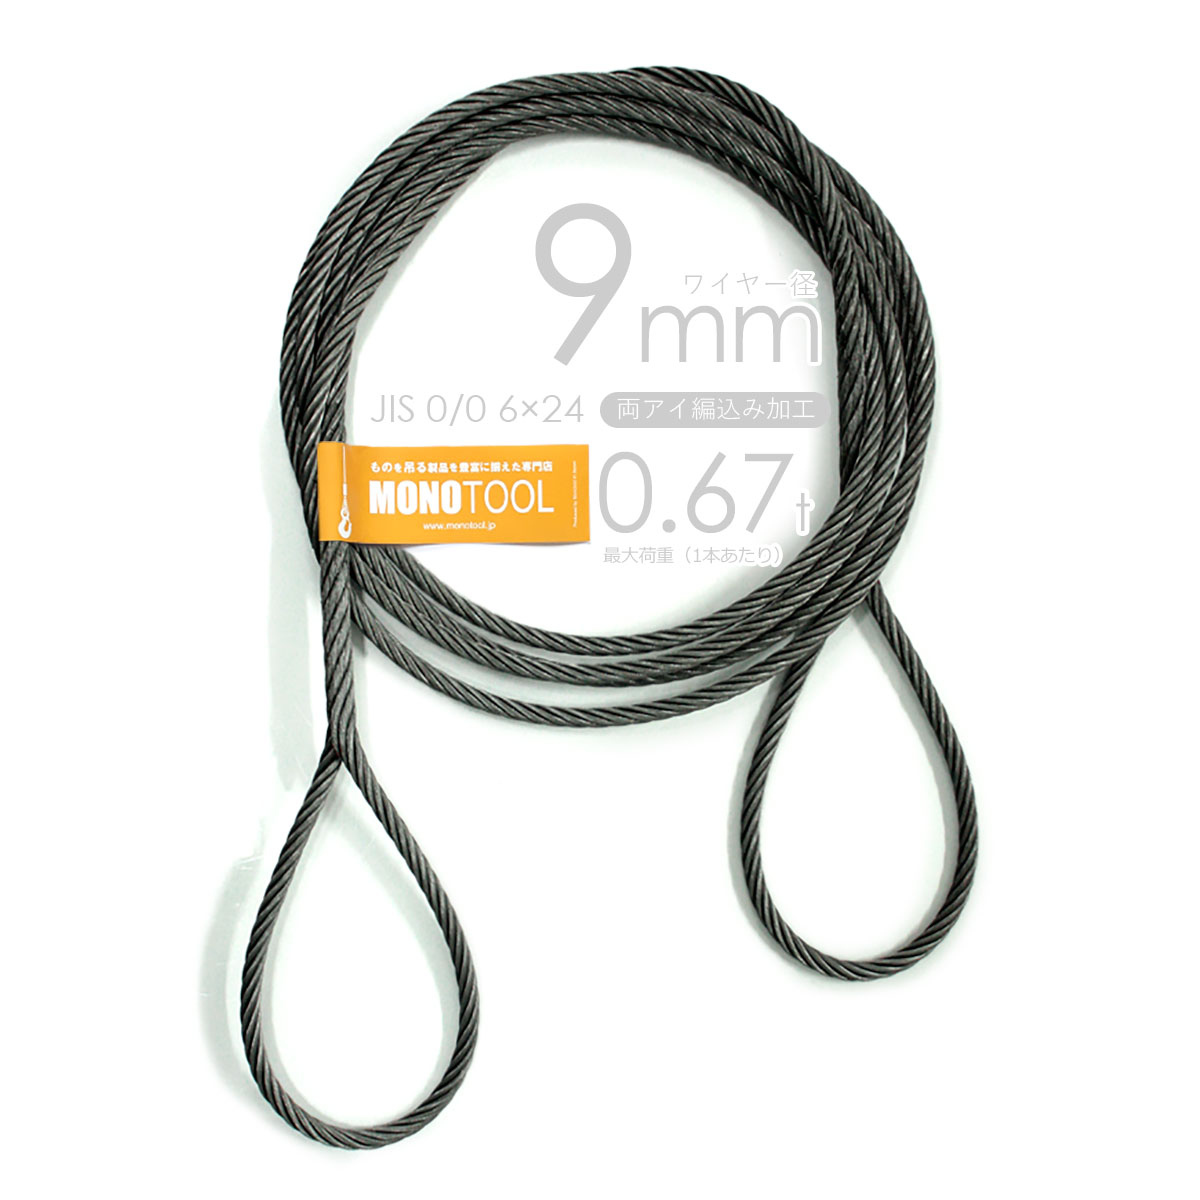 編み込み・フレミッシュ加工 JIS黒(O/O) 9mm(3分) 玉掛ワイヤロープ 2本組